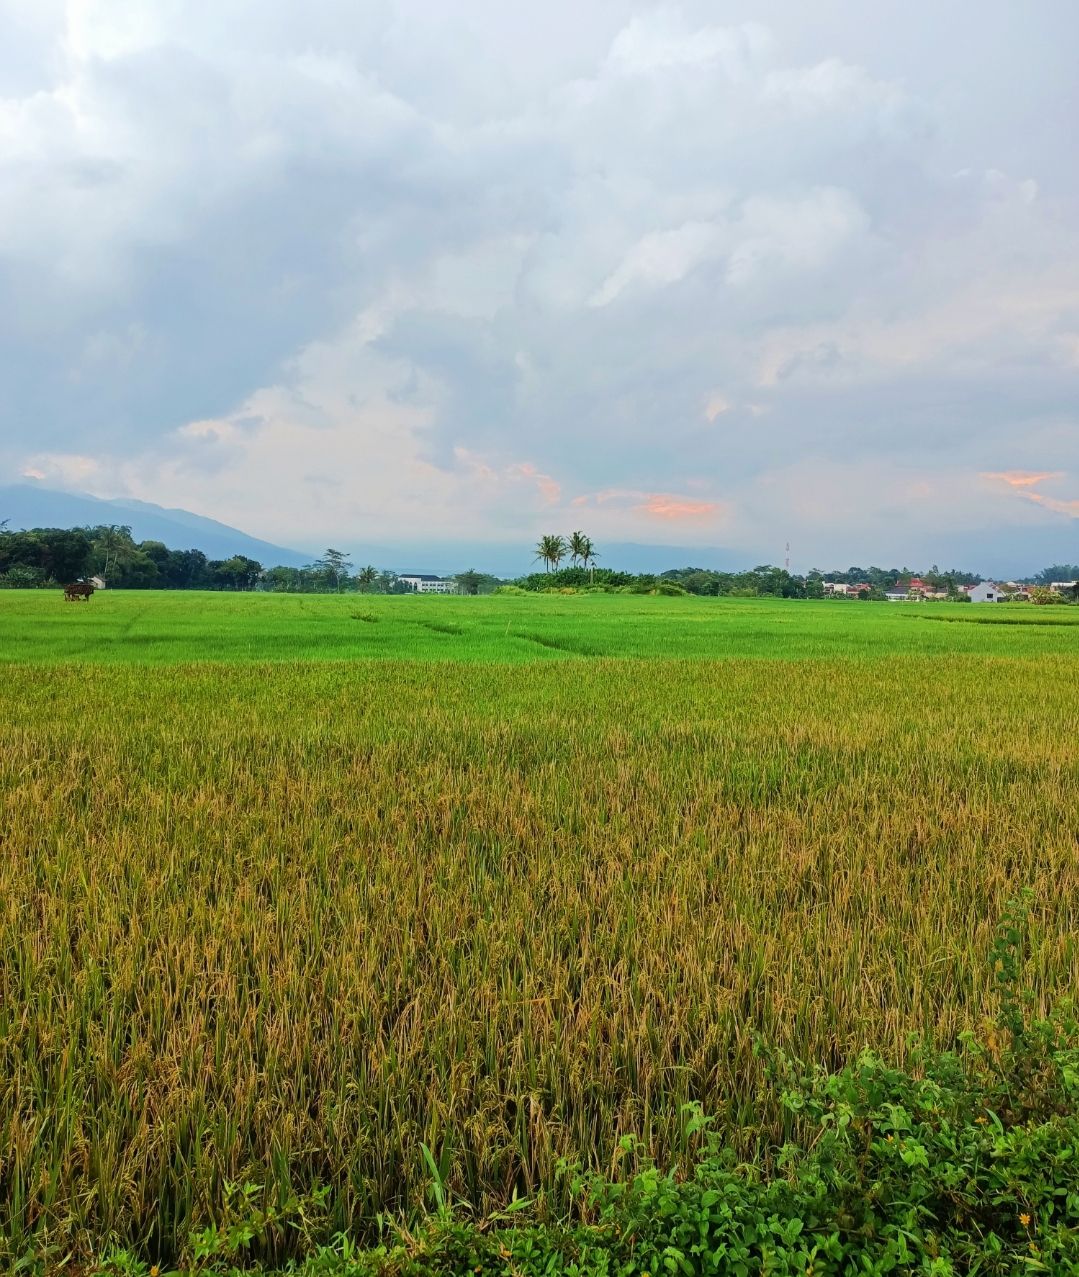 Pemandangan sawah diJalan Siranda Raya, Desa Bancaan, Kelurahan Pulutan, Kecamatan Sidorejo, Kota Salatiga, Jawa Tengah.